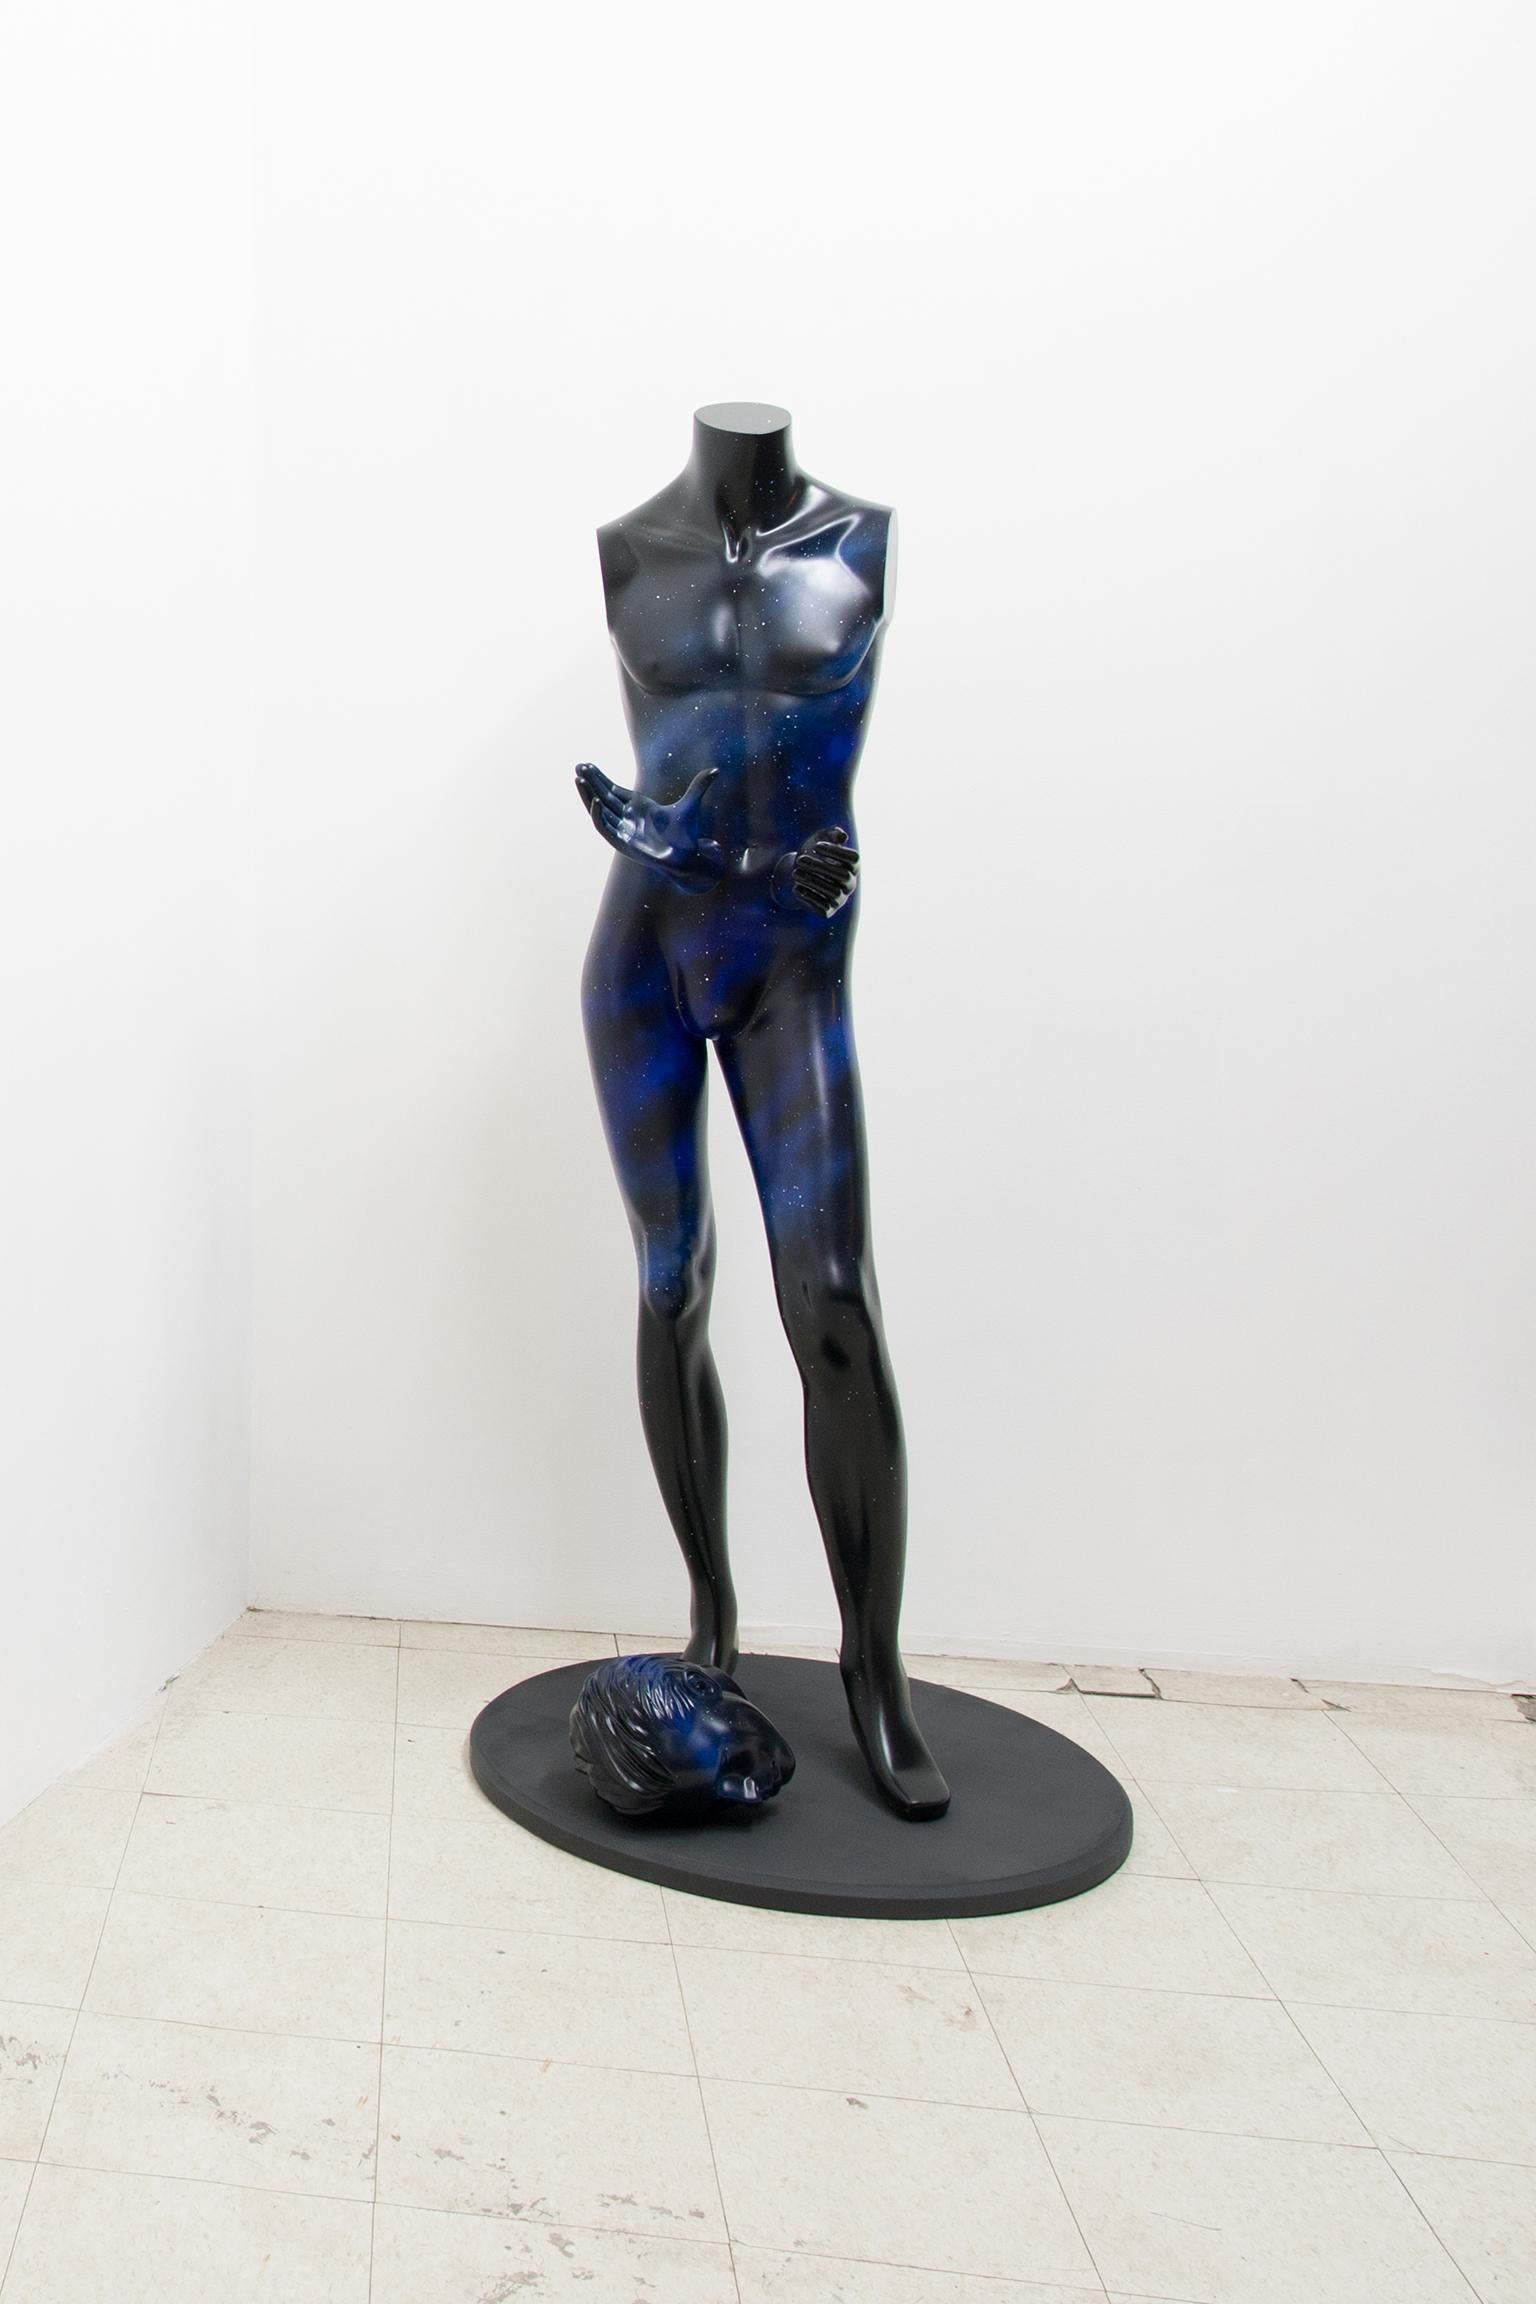 Applause für das Inevitable (Zeitgenössisch), Sculpture, von Bevan Ramsay